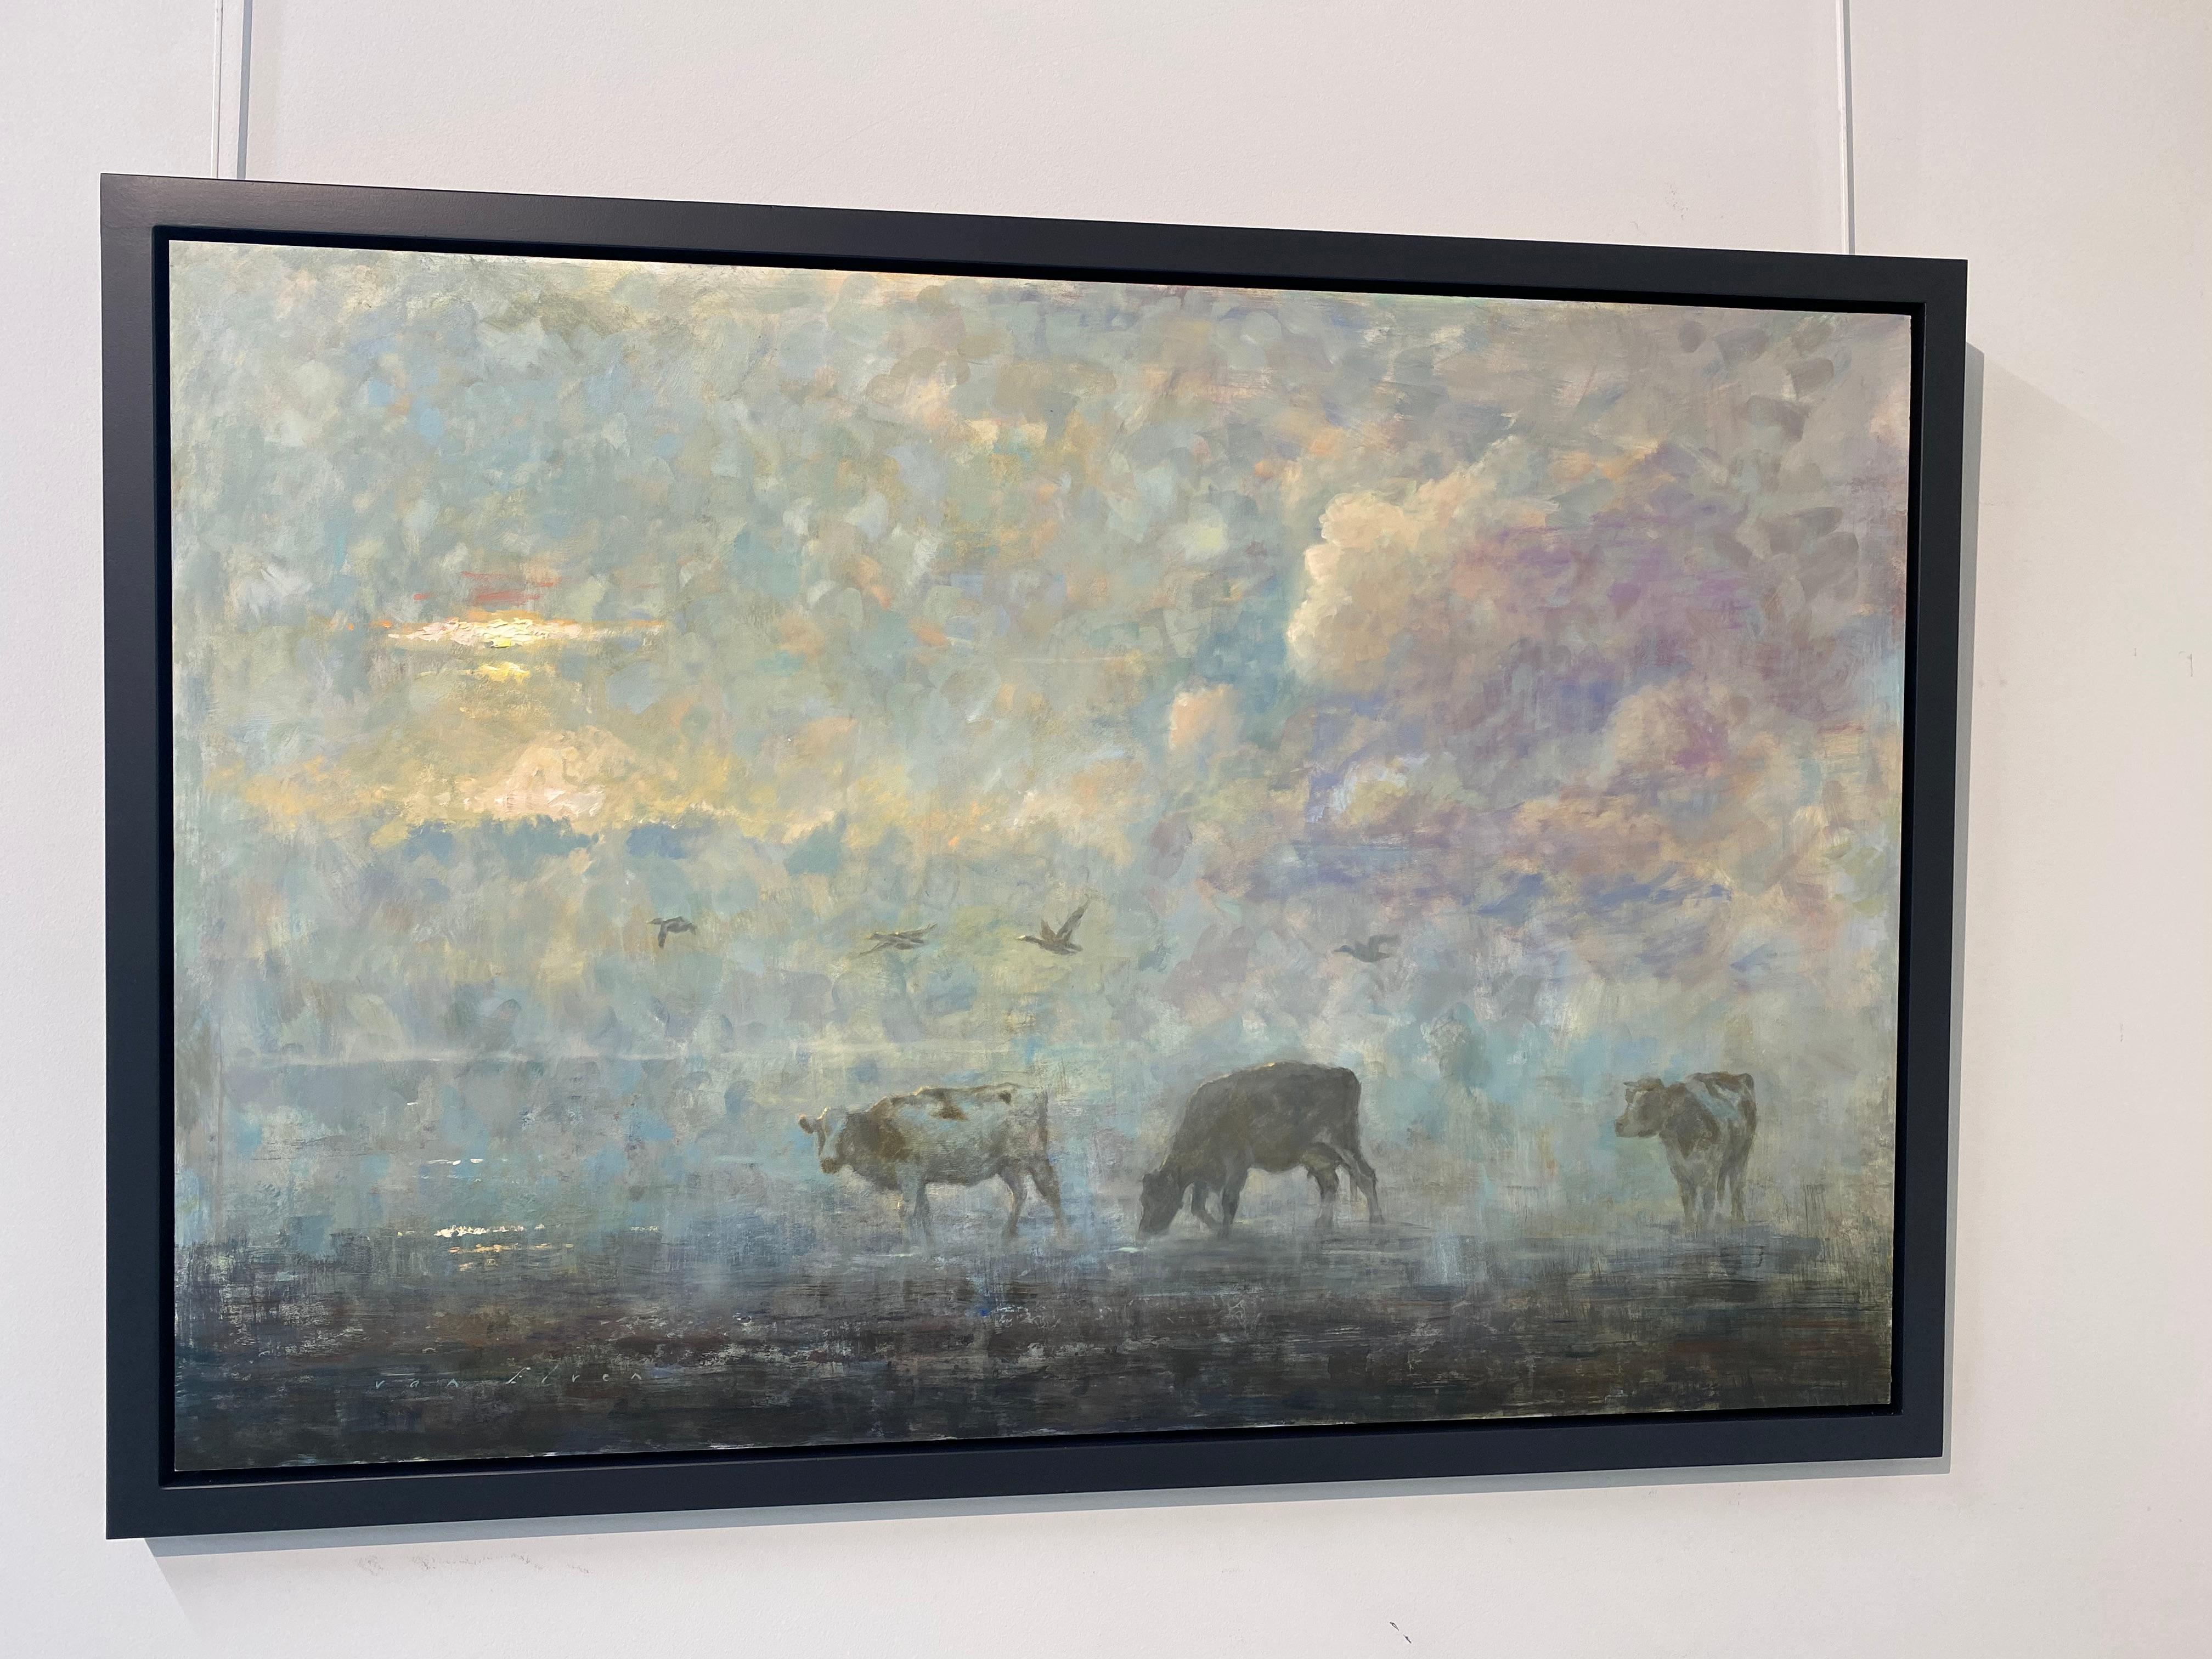 Oiseaux anciens - Peinture impressionniste néerlandaise contemporaine du 21e siècle avec vaches - Painting de Erik van Elven